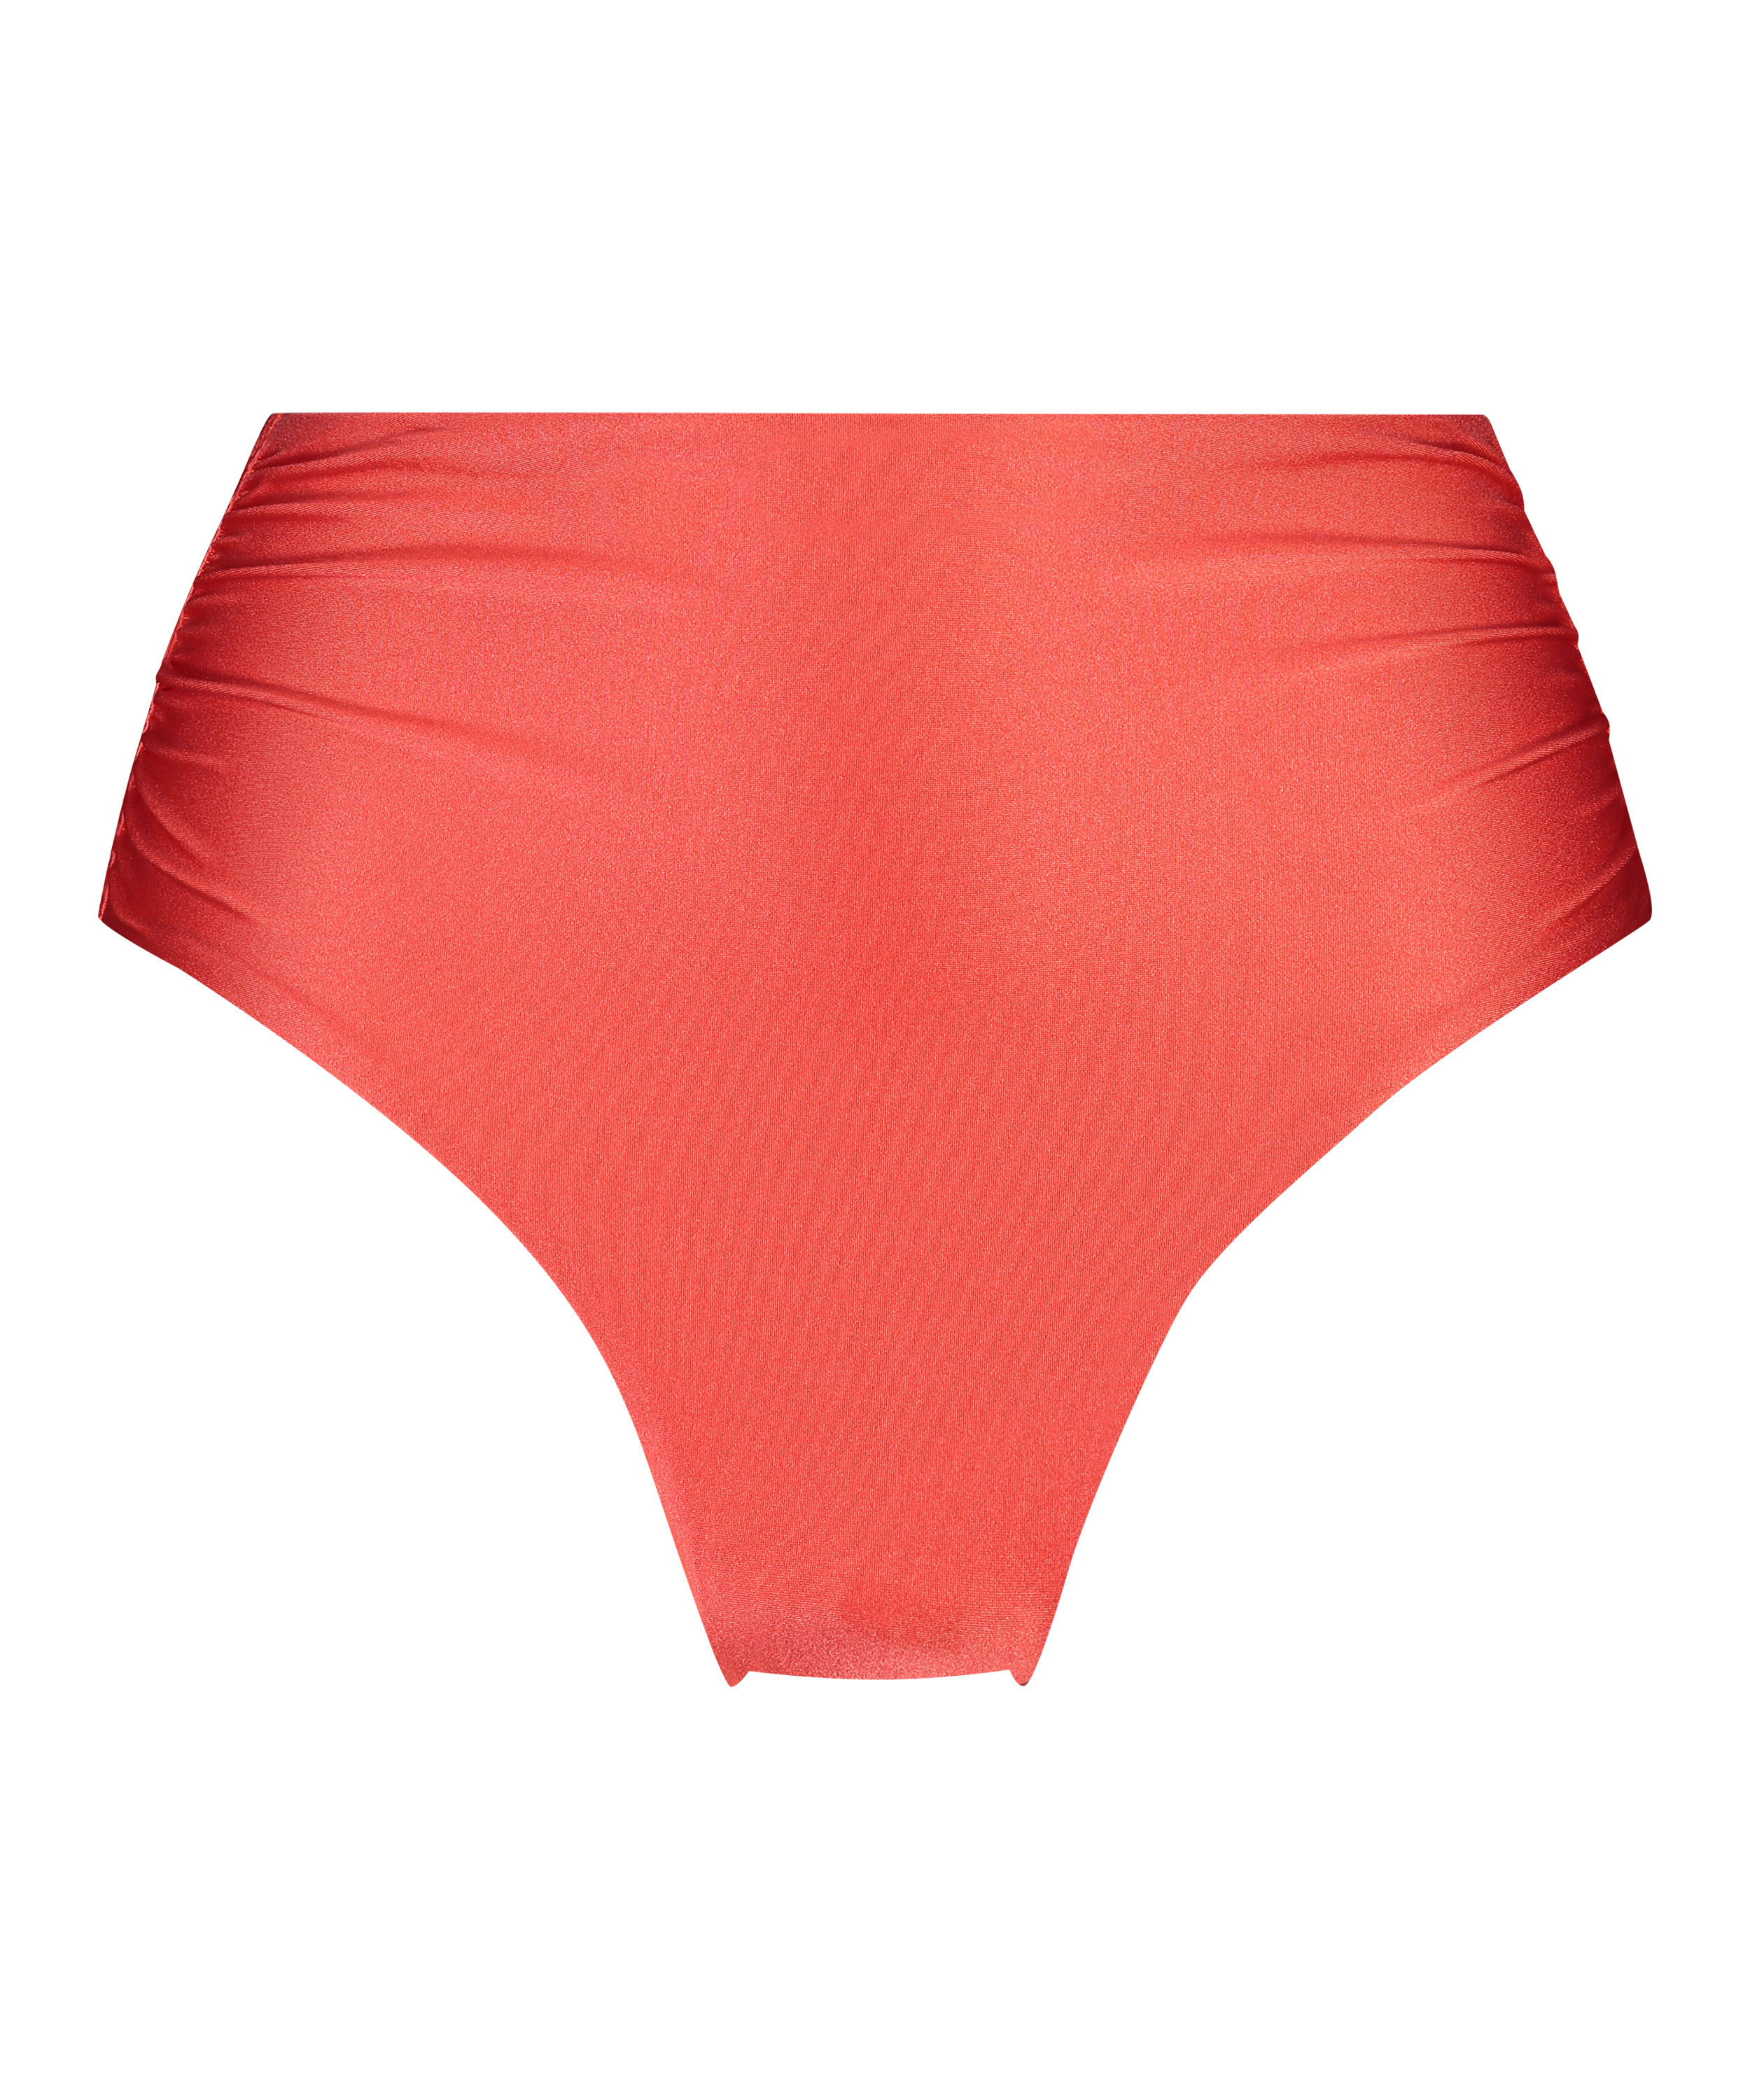 Luxe Shaping Bikini Bottoms, Red, main